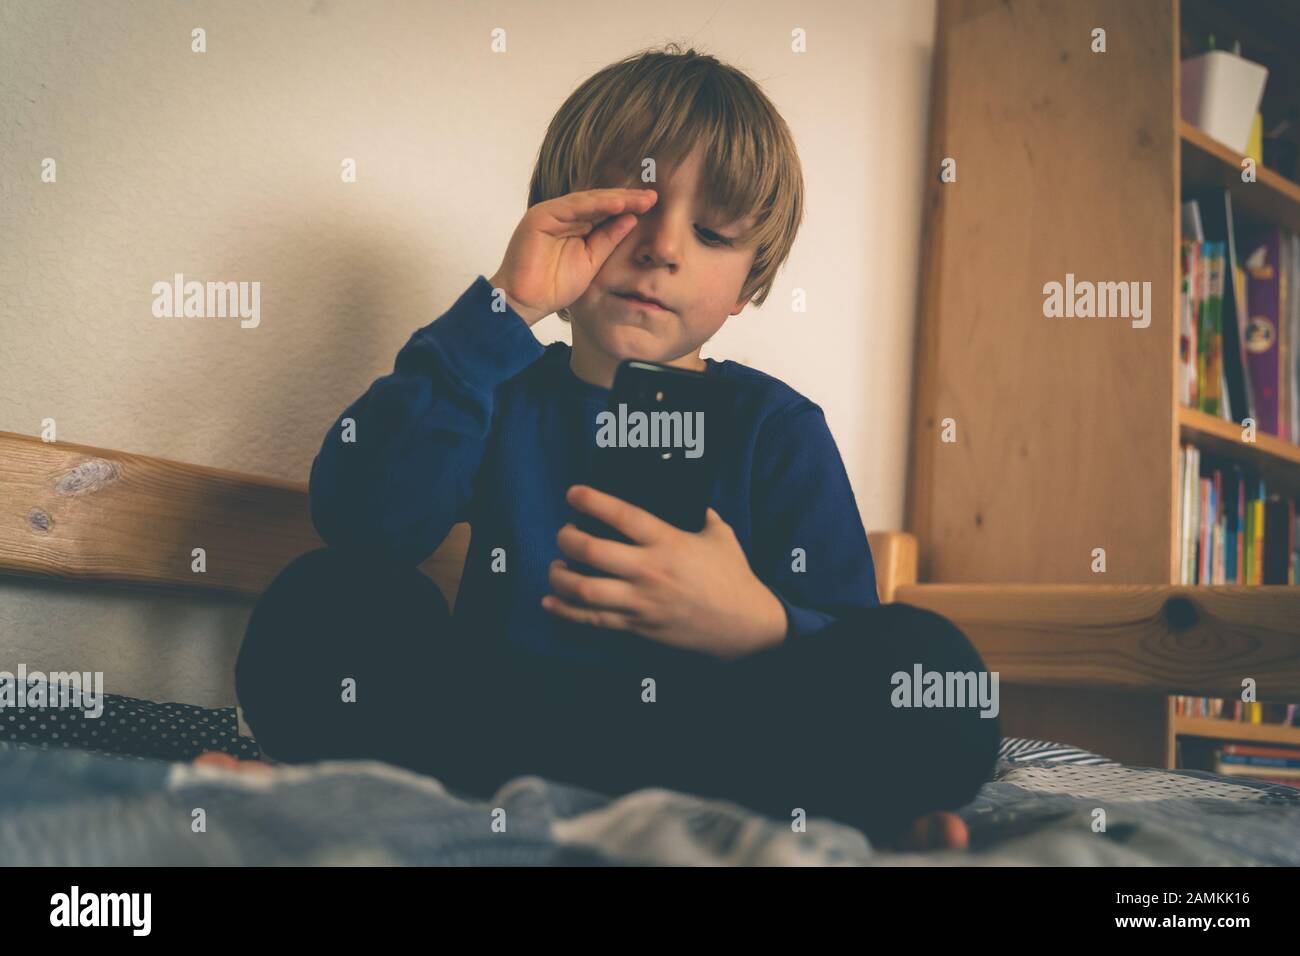 Cyber-Mobbing-Konzept - depressiver Junge mit Telefon und negativen Kommentaren Stockfoto